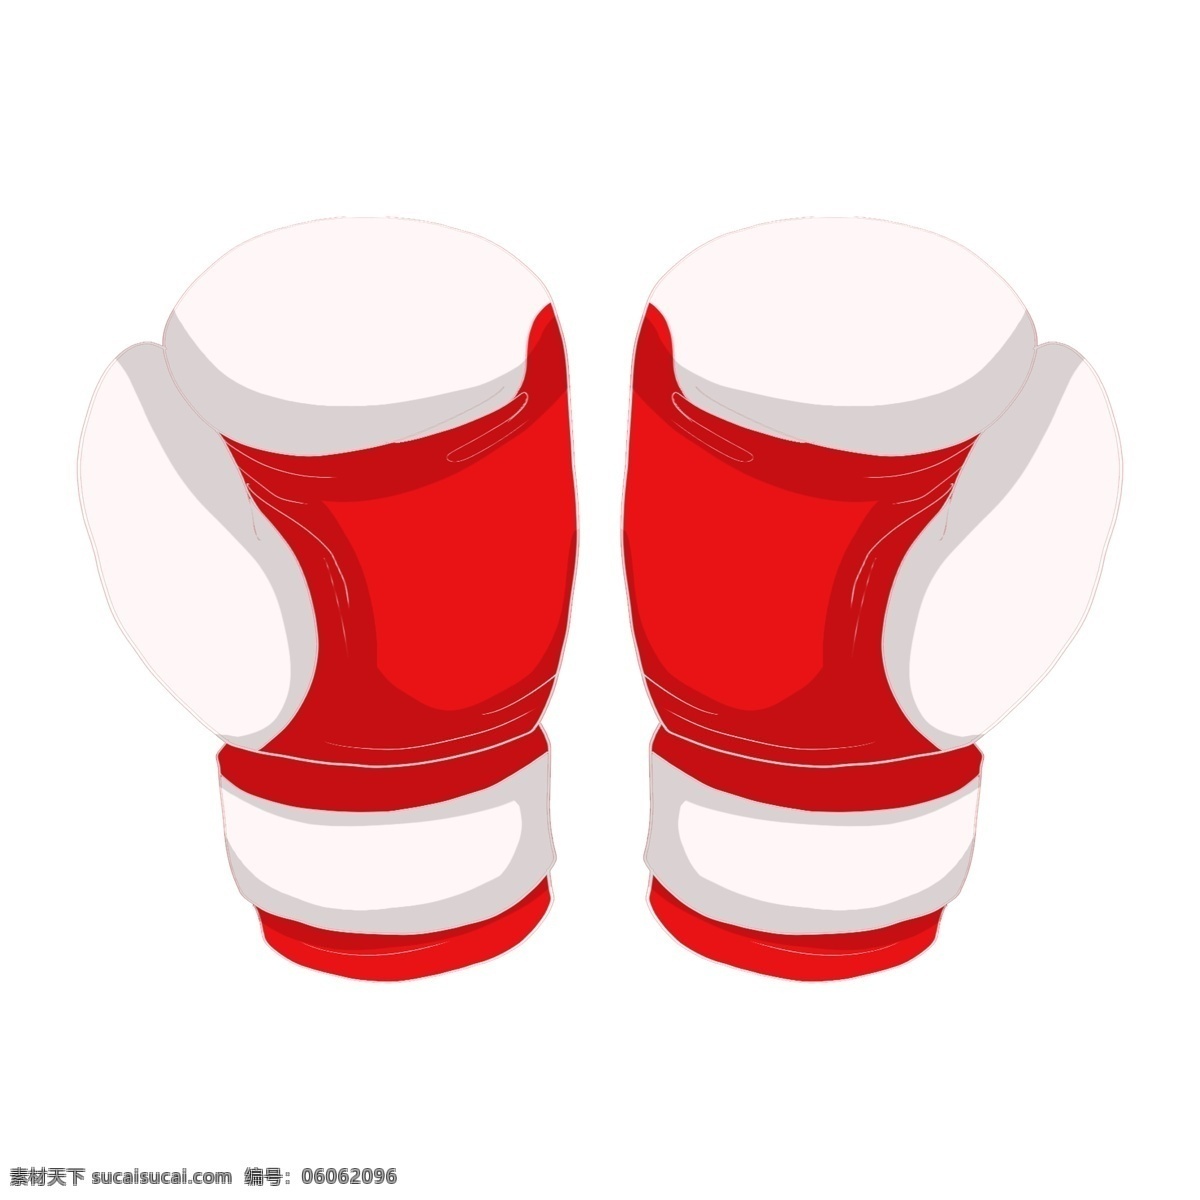 红 白 拳击 手套 插画 红白色 漂亮 精美拳击手套 可爱 时尚拳击手套 拳击手套插画